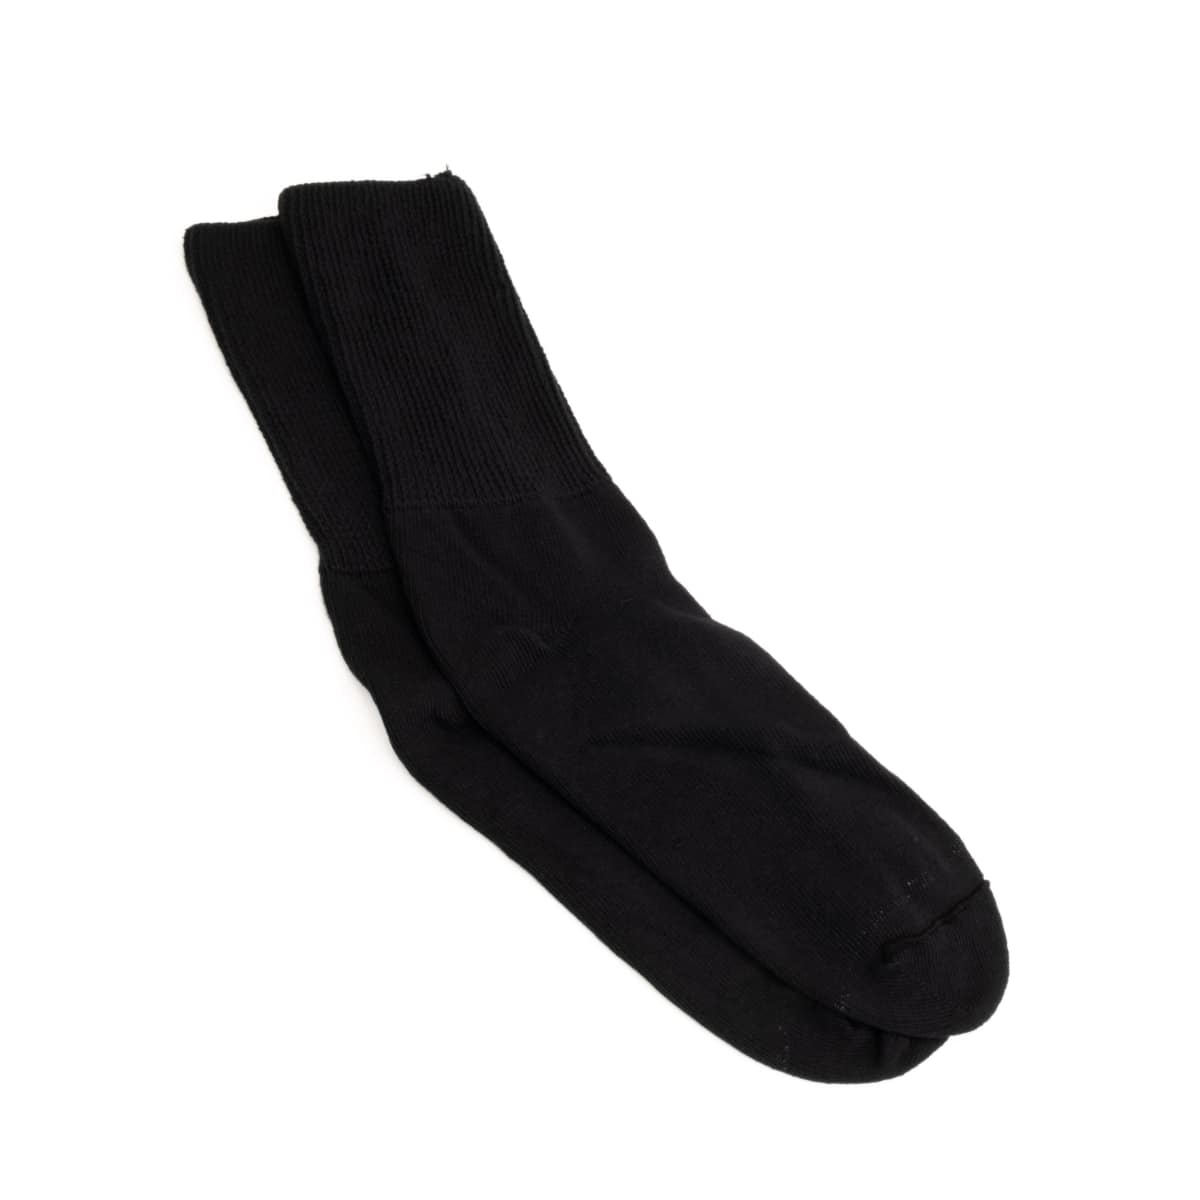 black crew socks - black mid calf socks